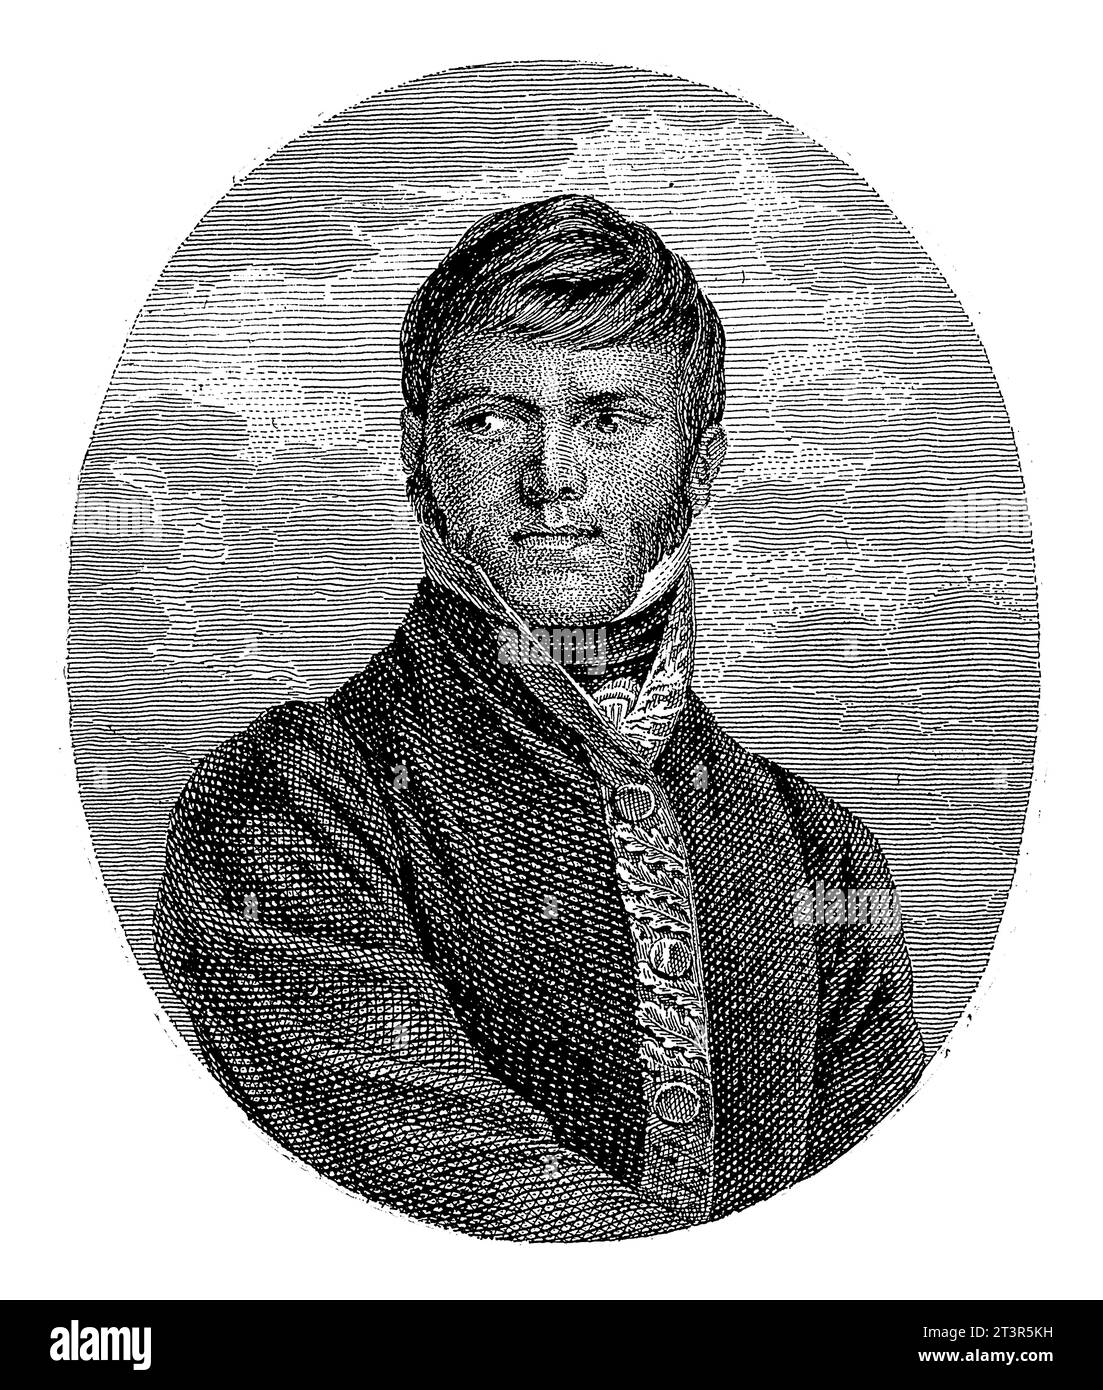 Portrait of the Mexican guerilla leader Francisco Javier Mina, Daniel Veelwaard (I), after J. Harrison, 1776 - 1851, vintage engraved. Stock Photo